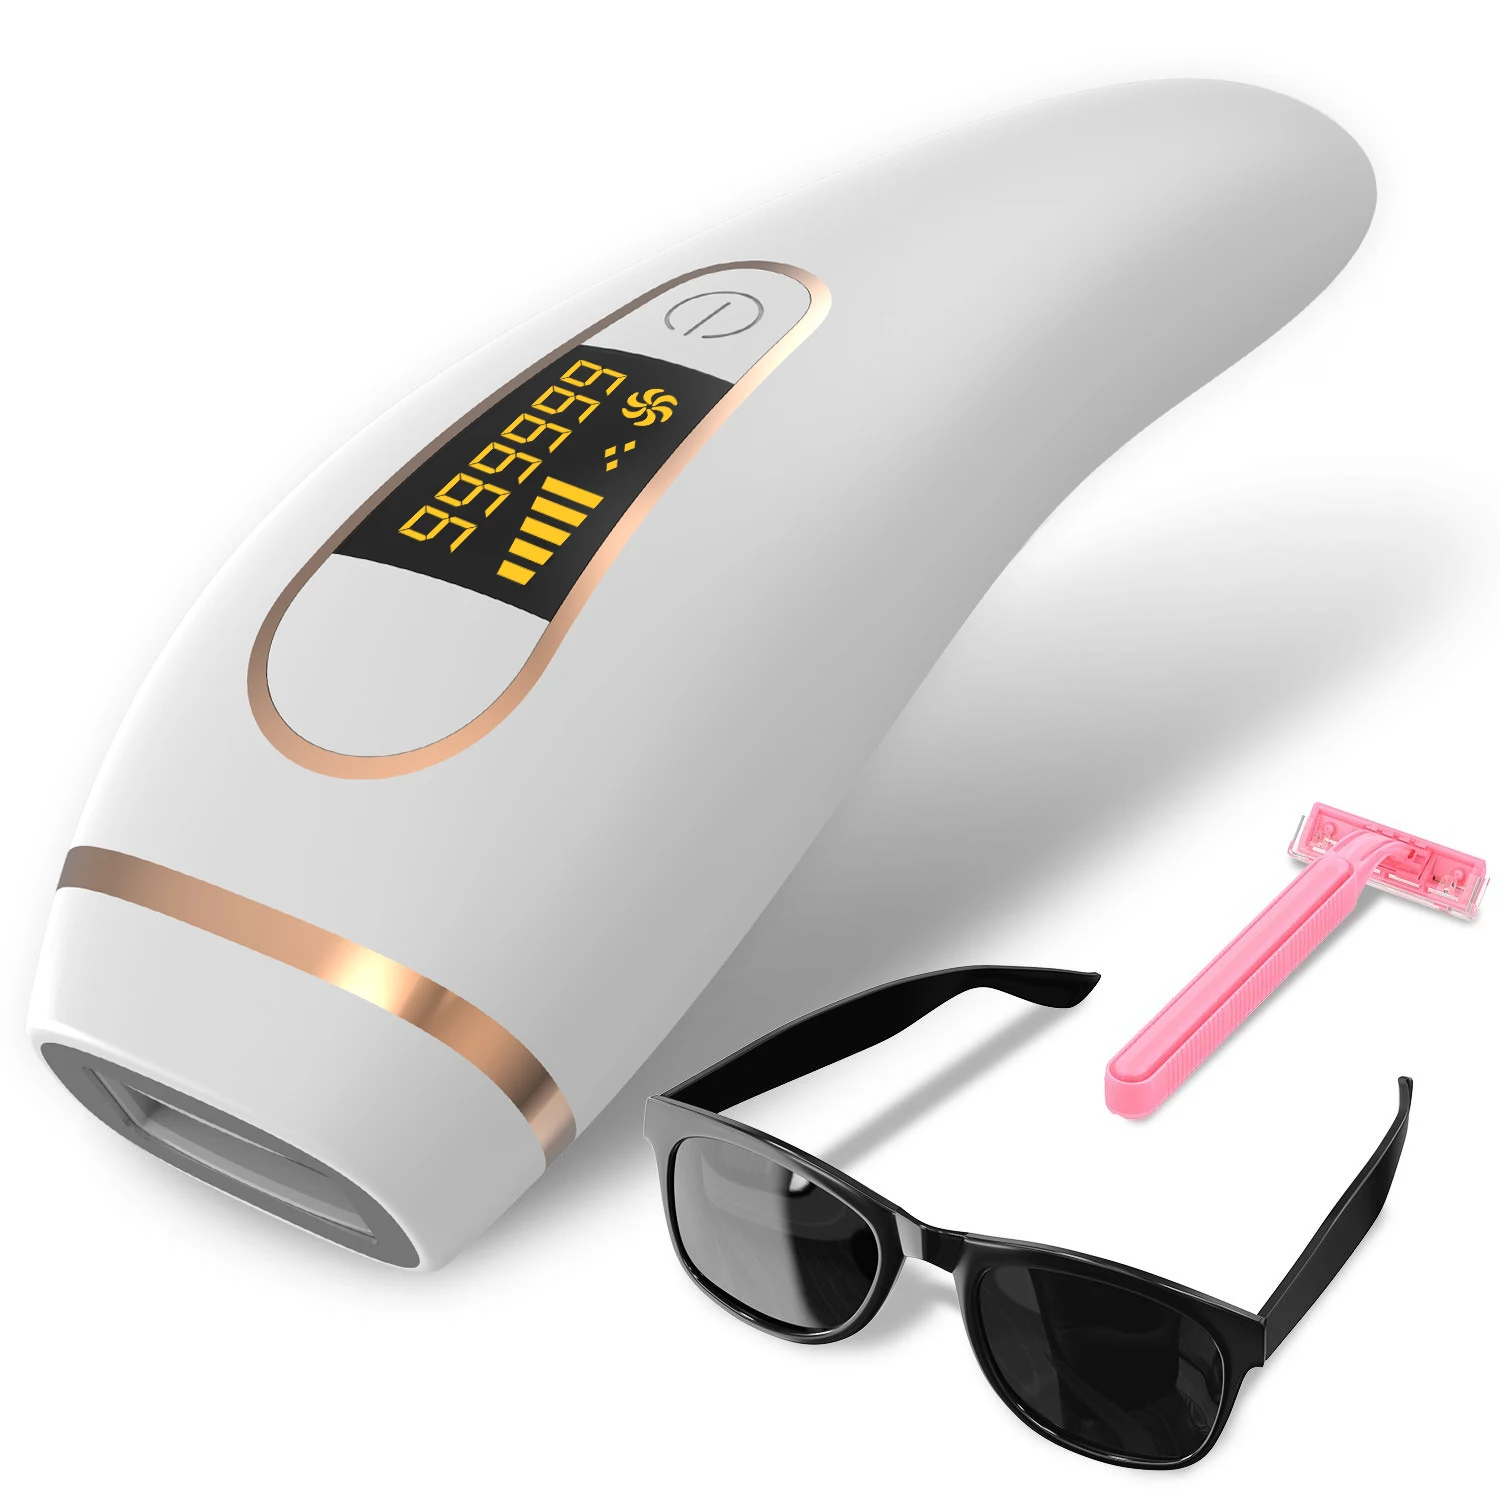 

Устройство для удаления волос Ipl, портативное устройство для домашнего использования, устройство для удаления волос, безболезненный лазер, домашняя профессиональная эпиляция Soprano Luminos